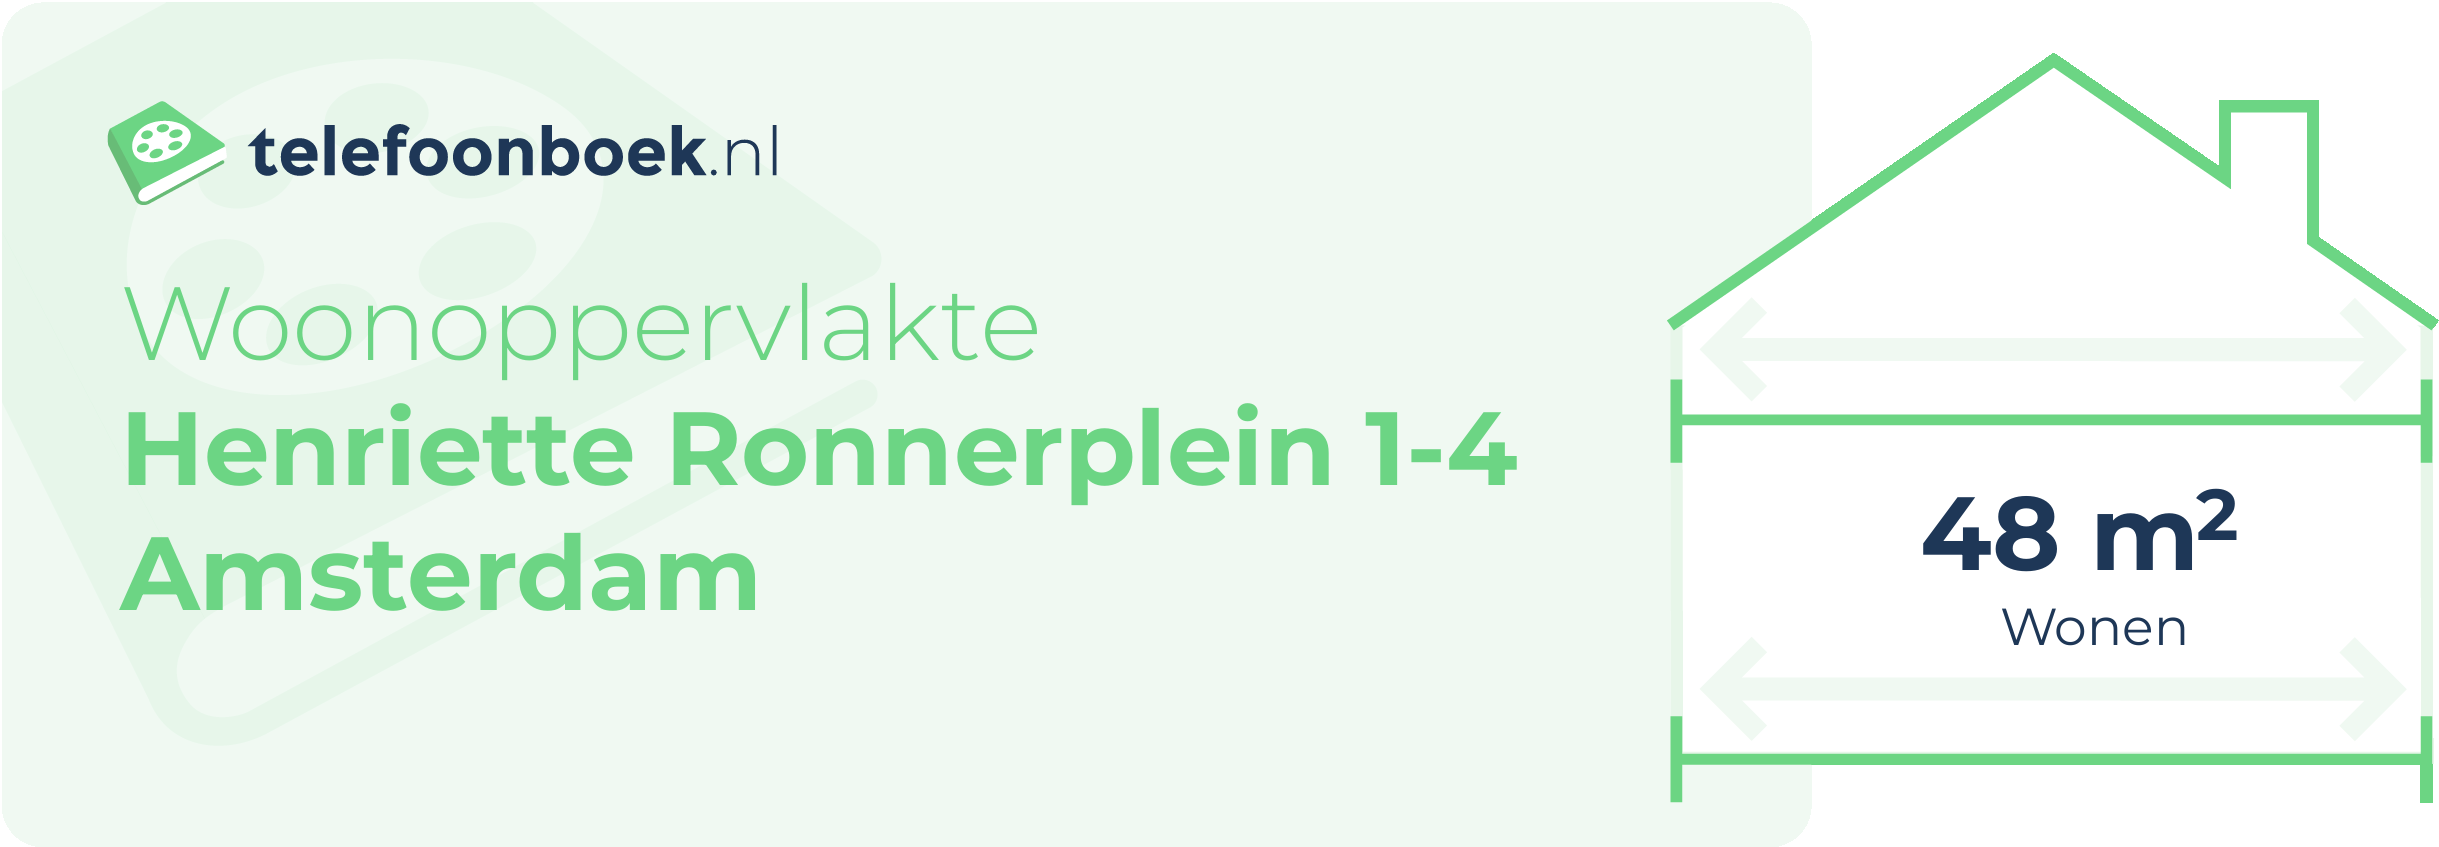 Woonoppervlakte Henriette Ronnerplein 1-4 Amsterdam